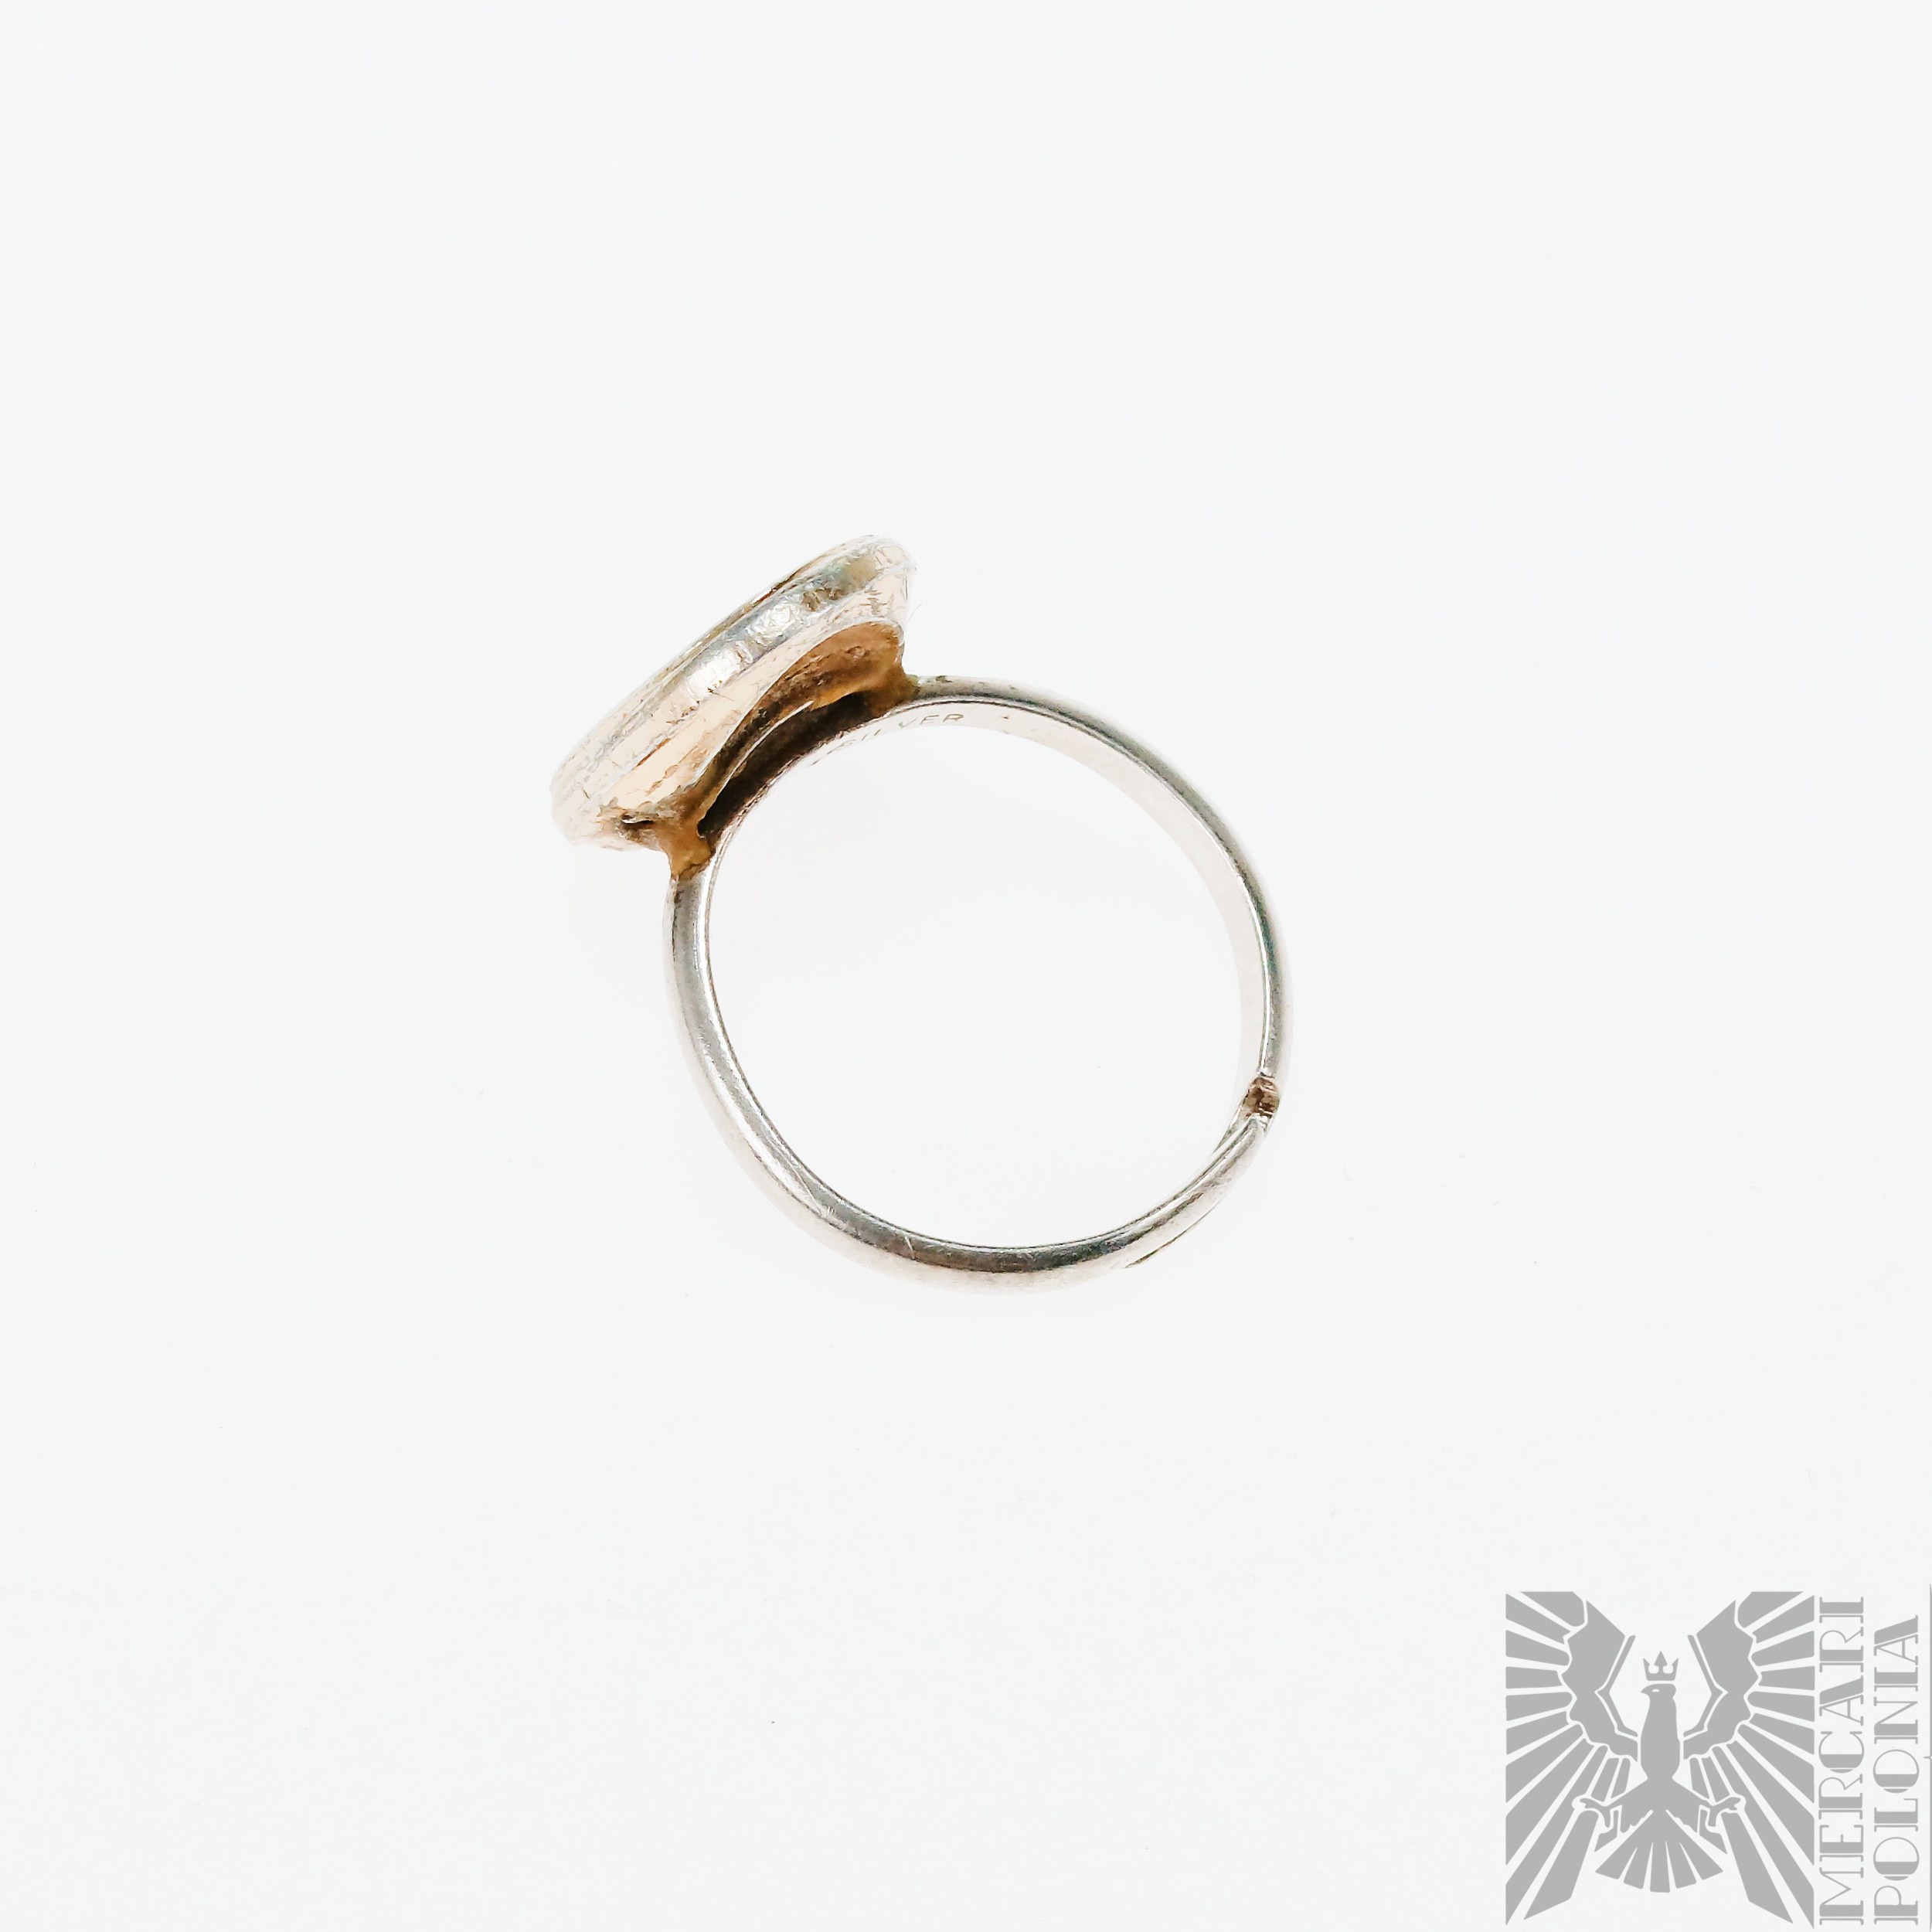 Ring St. Christophorus, 925 Silber, verstellbar Größe 13-19 -  Internet-Auktion / Online-Gebote - Preis - OneBid